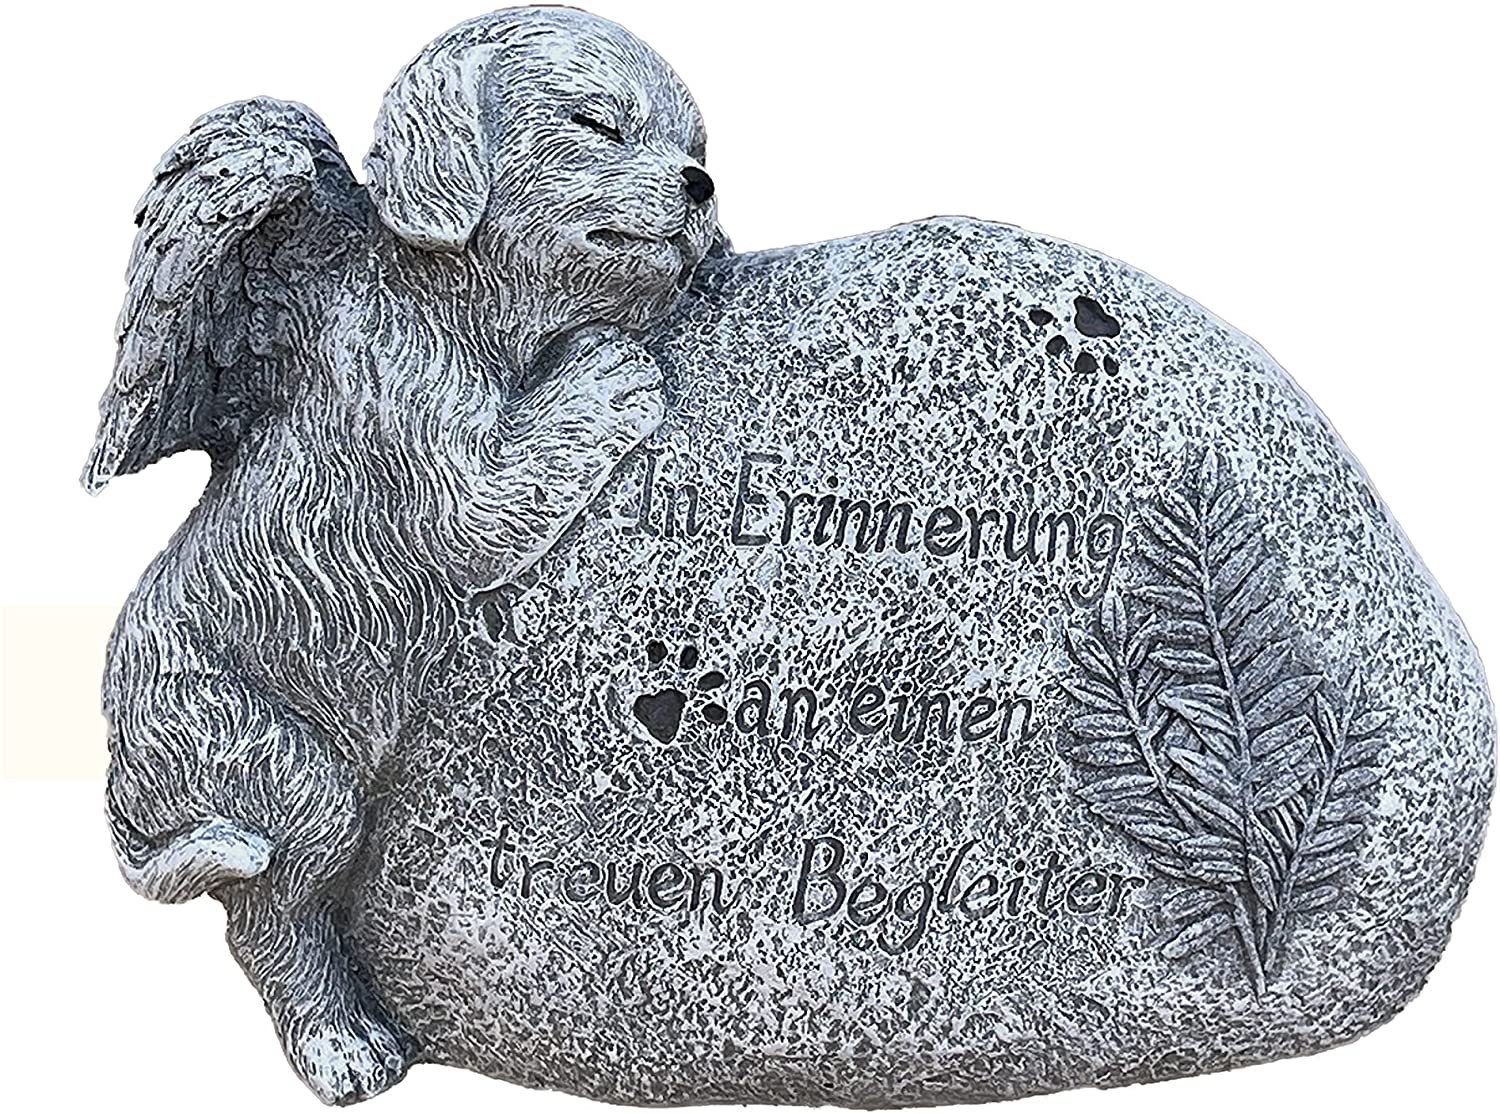 Inschrift Grabstein Hund and Style mit Stone Gartenfigur Grabschmuck